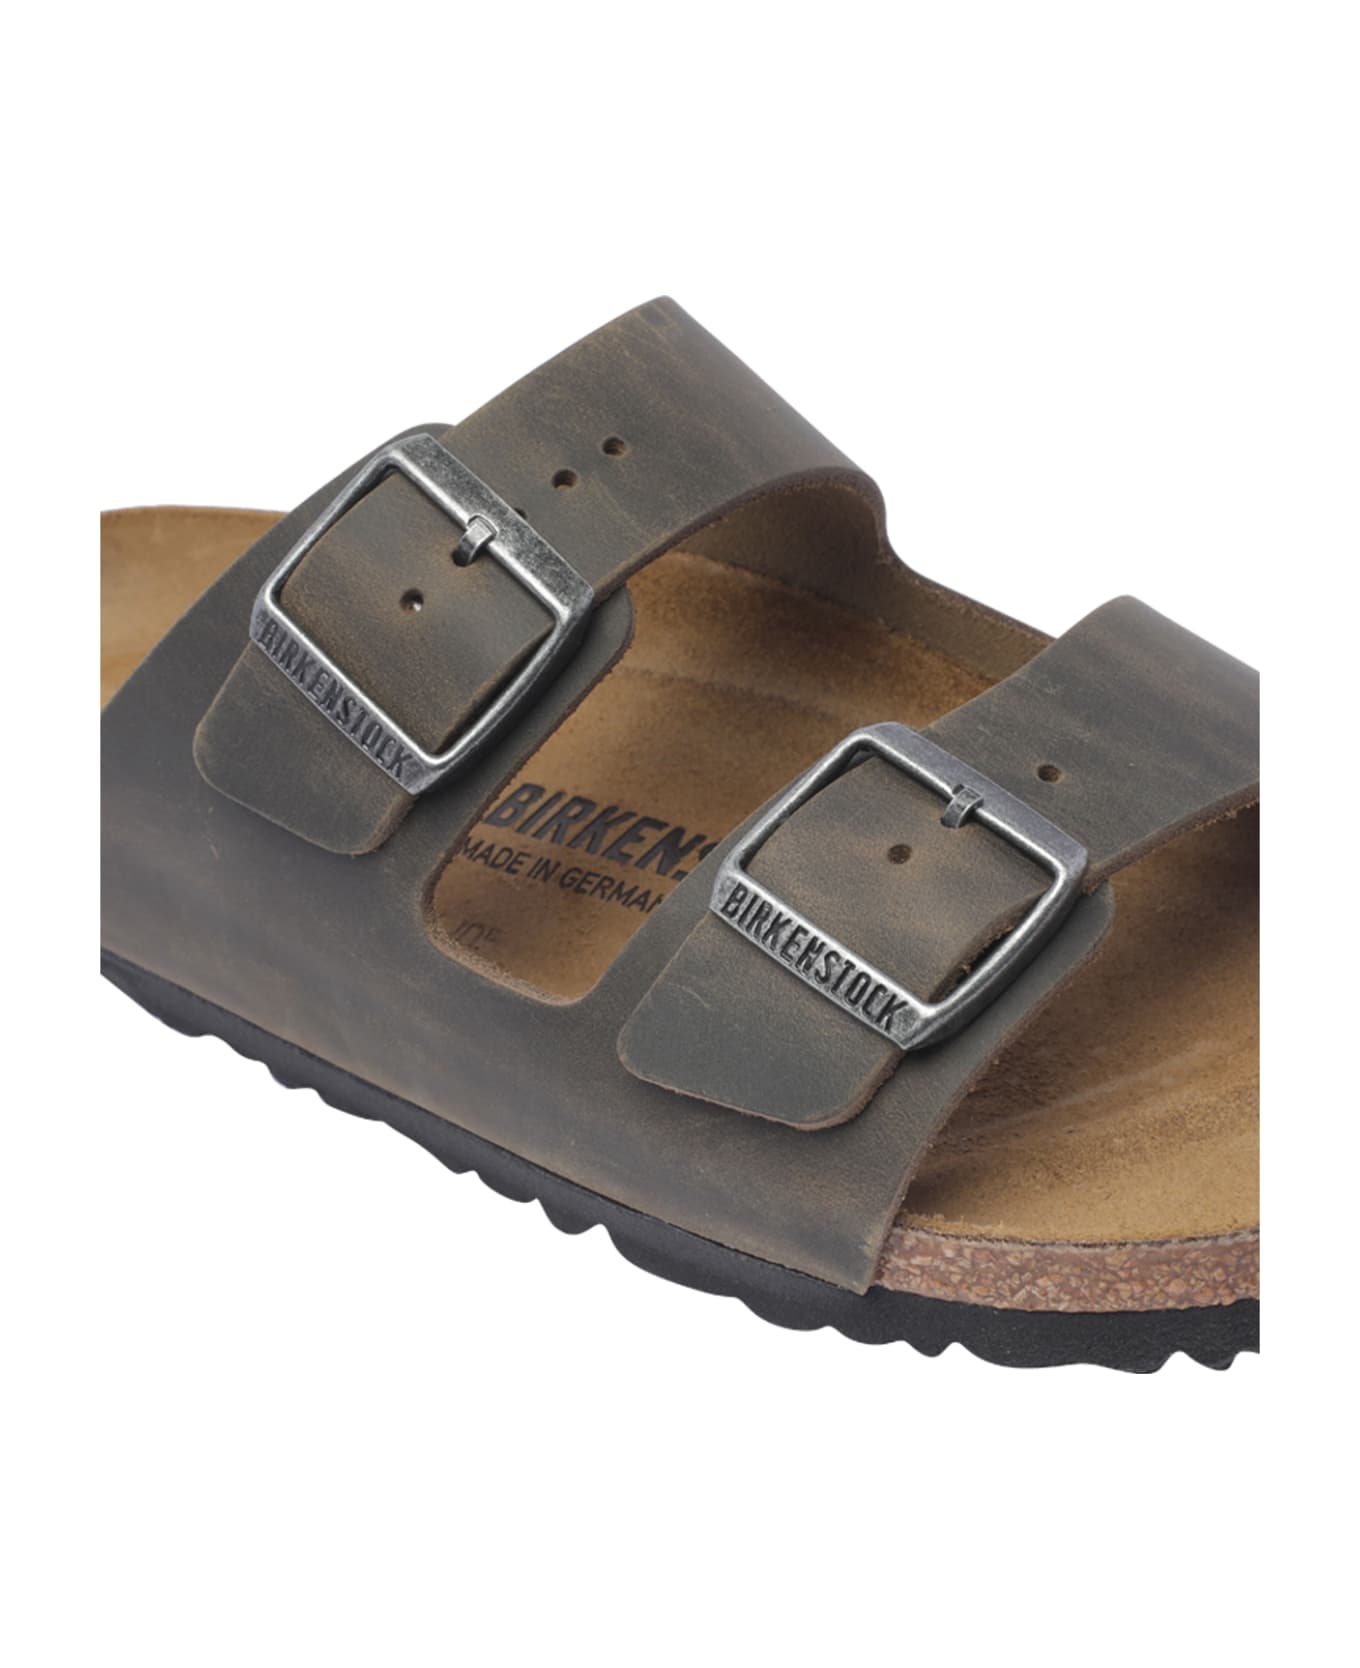 Birkenstock Arizona Sandals - Green